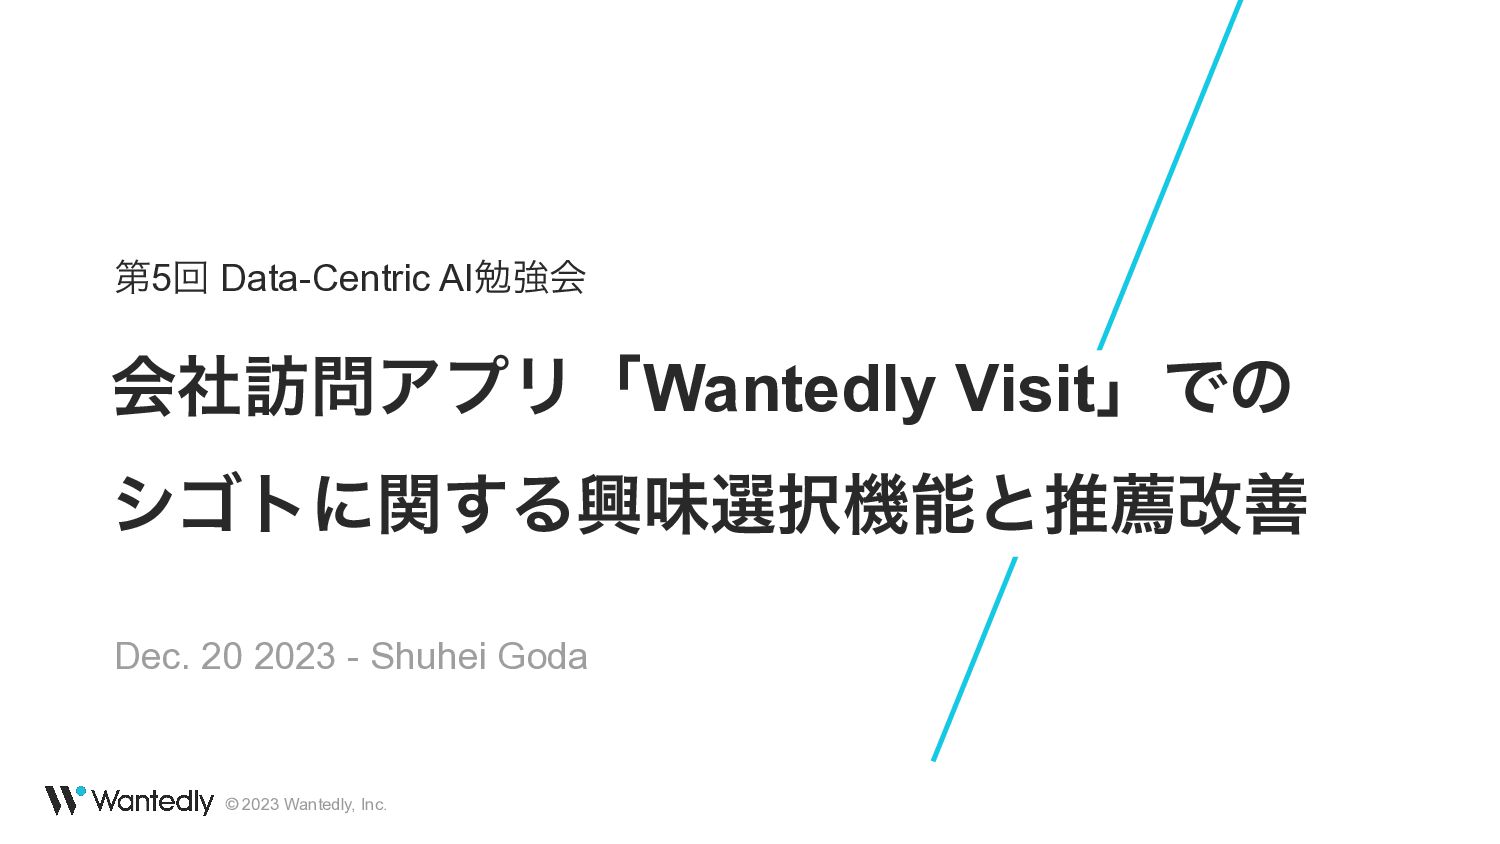 会社訪問アプリ「Wantedly Visit」での シゴトに関する興味選択機能と推薦改善